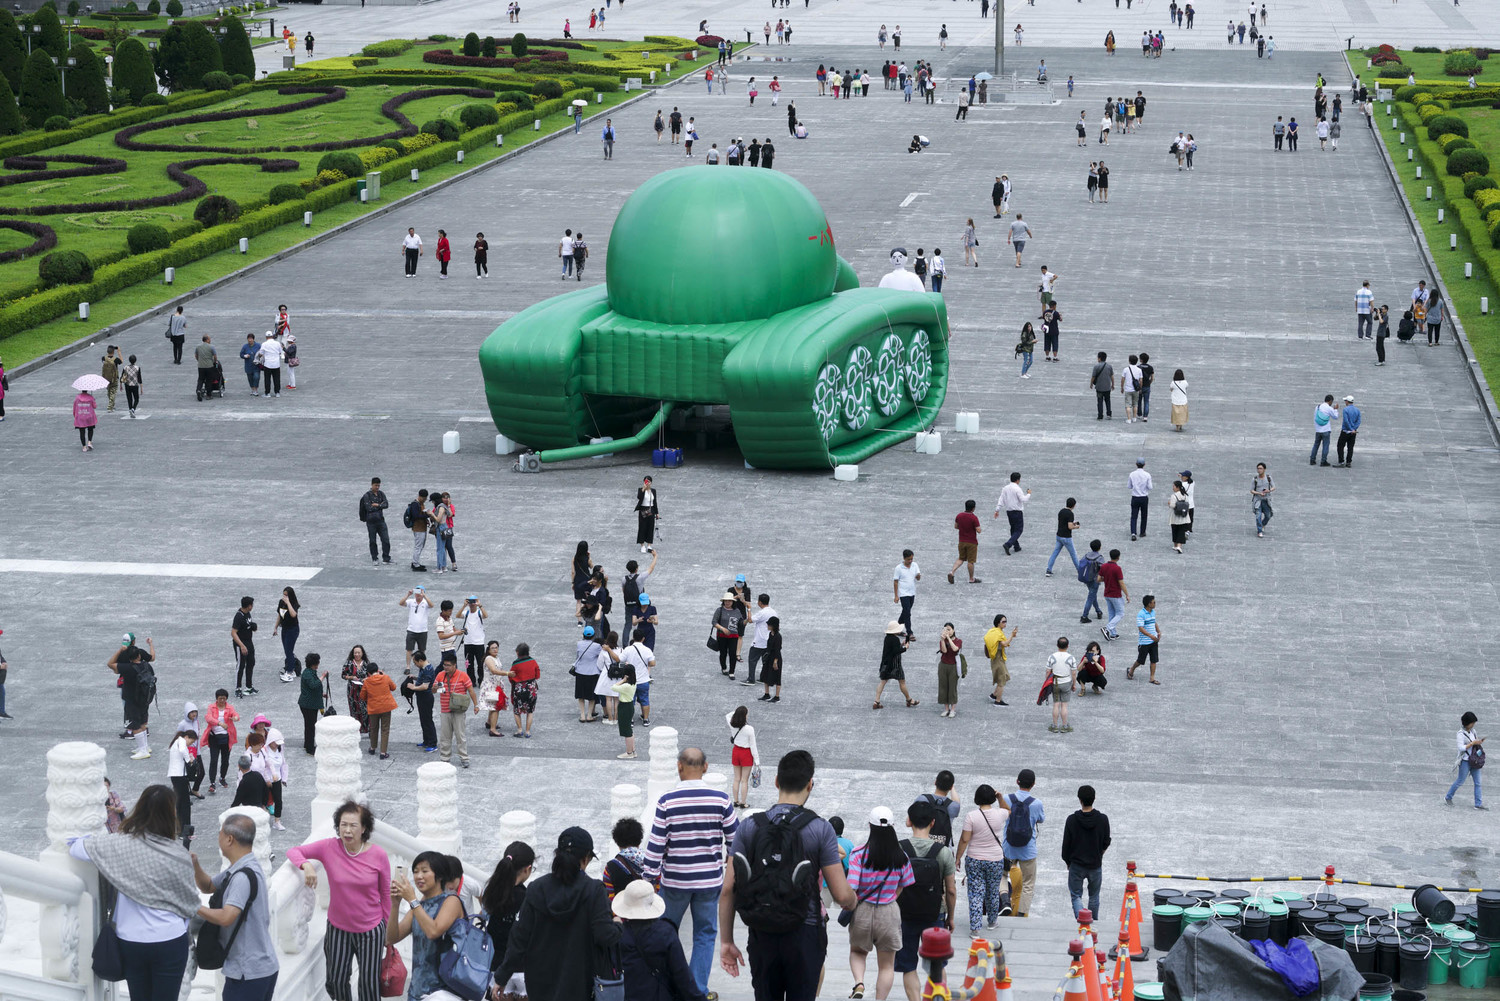 今年是六四天安門事件30週年，「六四國際研討會」首度在台灣舉辦，中正紀念堂也從昨日起在廣場舉行「坦克人」裝置展，再現1989年六四事件時，「坦克人」站在一整排坦克前的大無畏精神。中正紀念堂主殿前廣場聚集許多中國和來自其他國家的觀光客，中國觀光客大都避開坦克人裝置展，其他國家的觀光客大都停下腳步觀看。   圖：張良一/攝